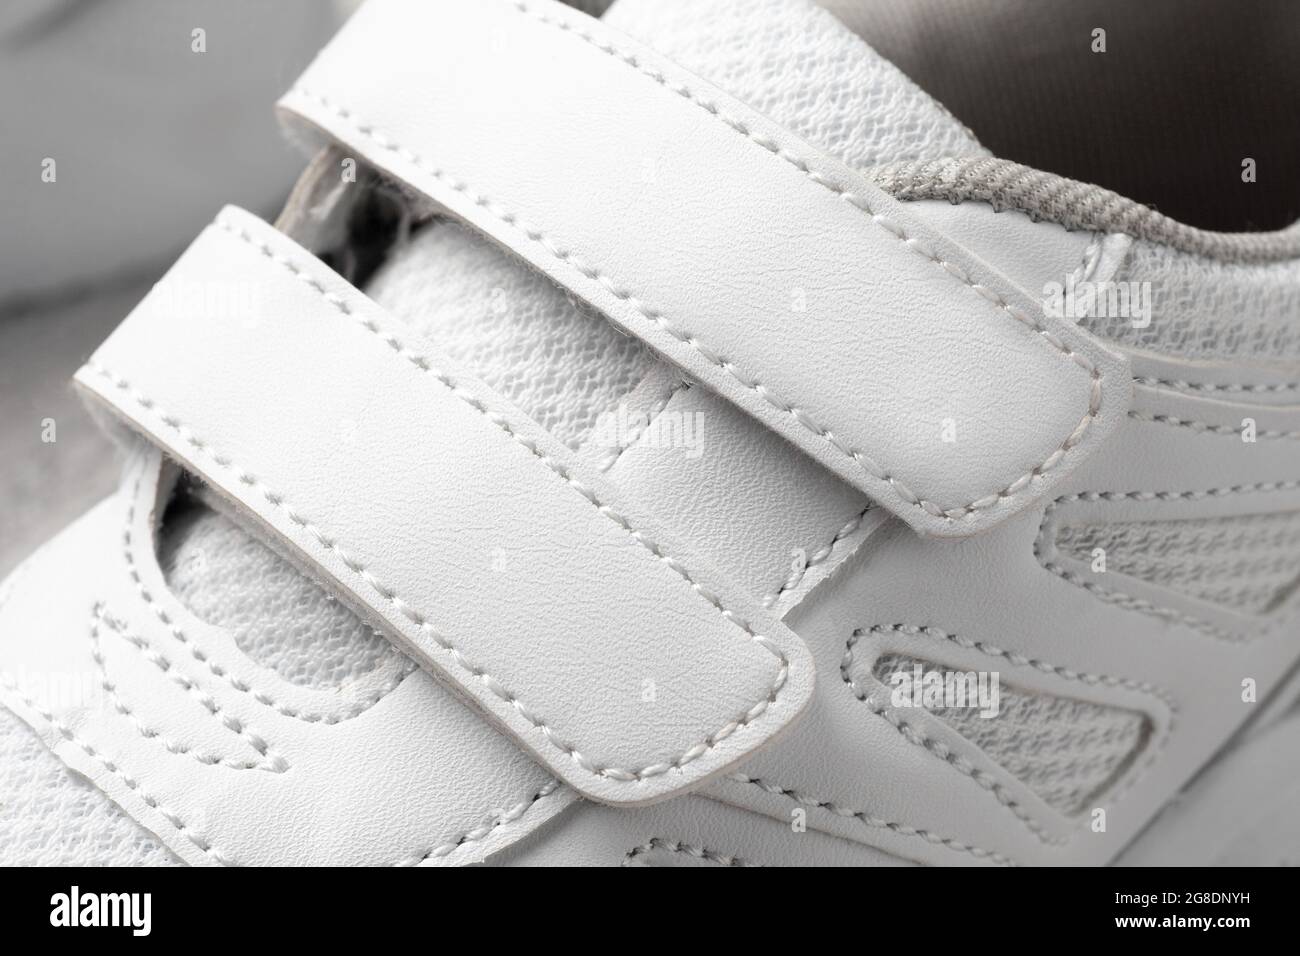 Photo des sneakers blanches pour enfant. Macro photographie de baskets de sport en cuir et tissu avec fermeture Velcro, vue du dessus, monochrome Banque D'Images